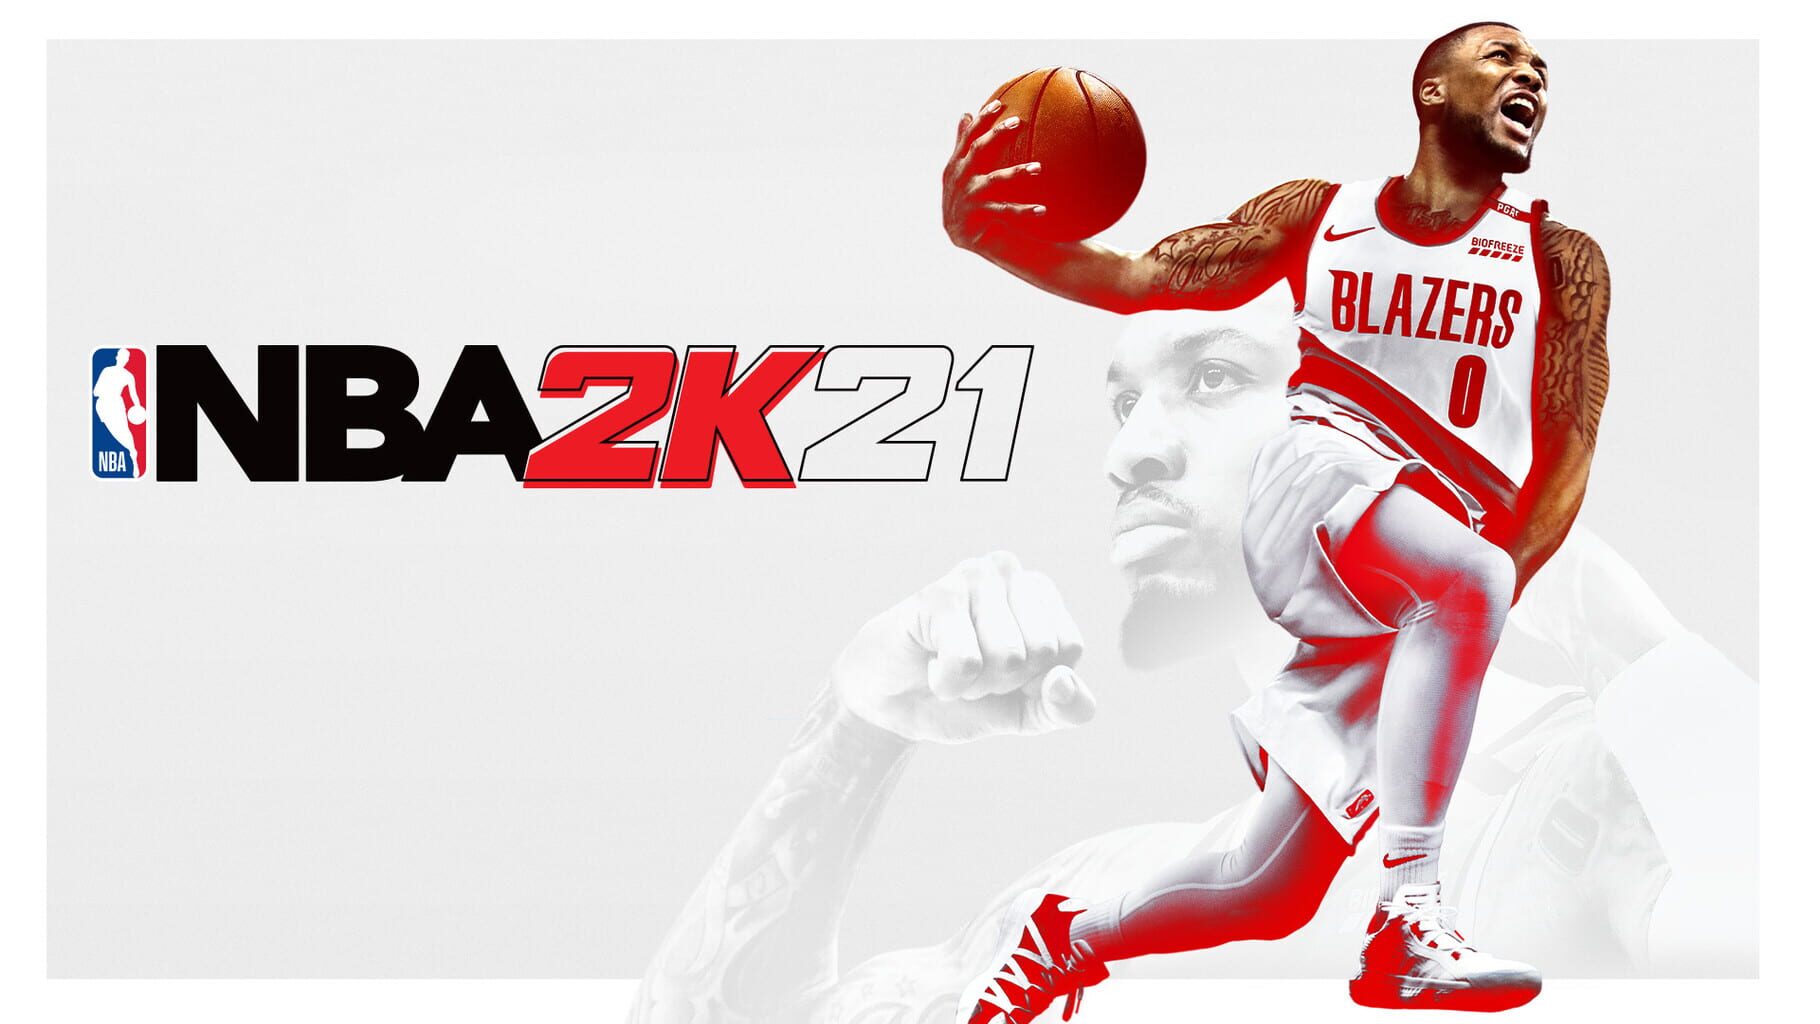 Arte - NBA 2K21